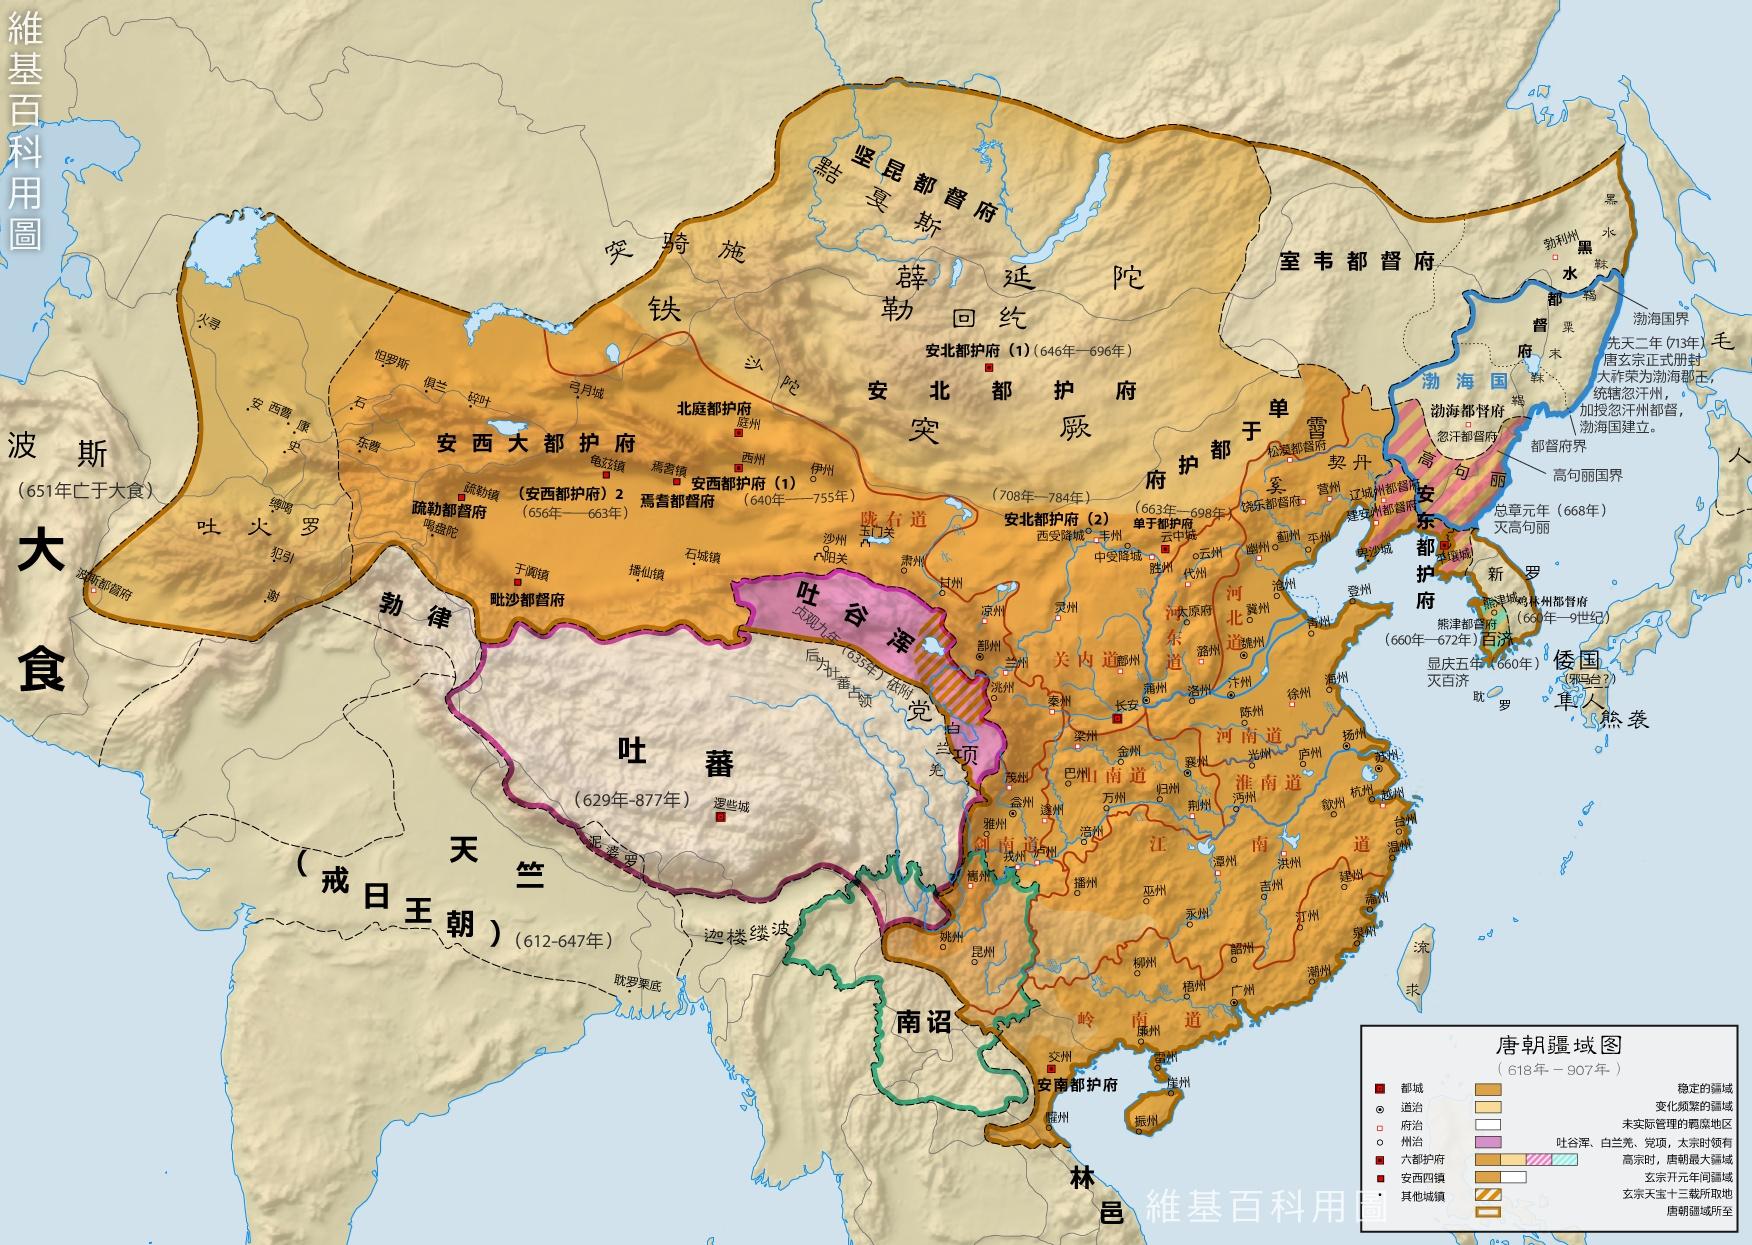 629年,玄奘离开长安经西域远赴天竺求法;630年,唐朝取得了对突厥的